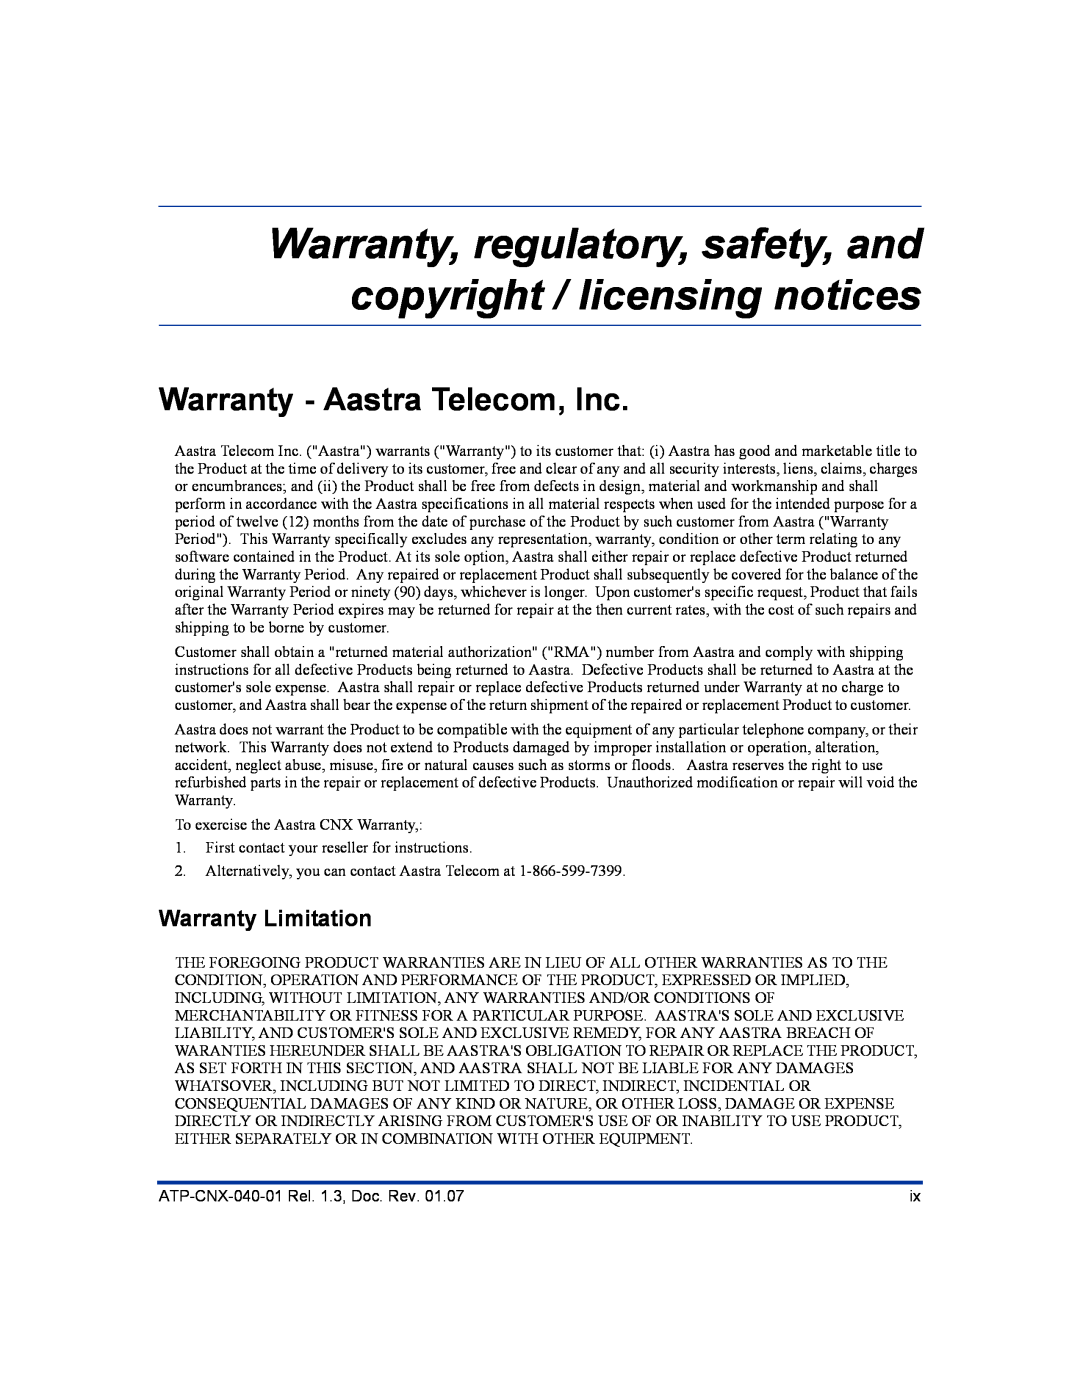 Aastra Telecom ATP-CNX-040-01 manual Warranty - Aastra Telecom, Inc, Warranty Limitation 